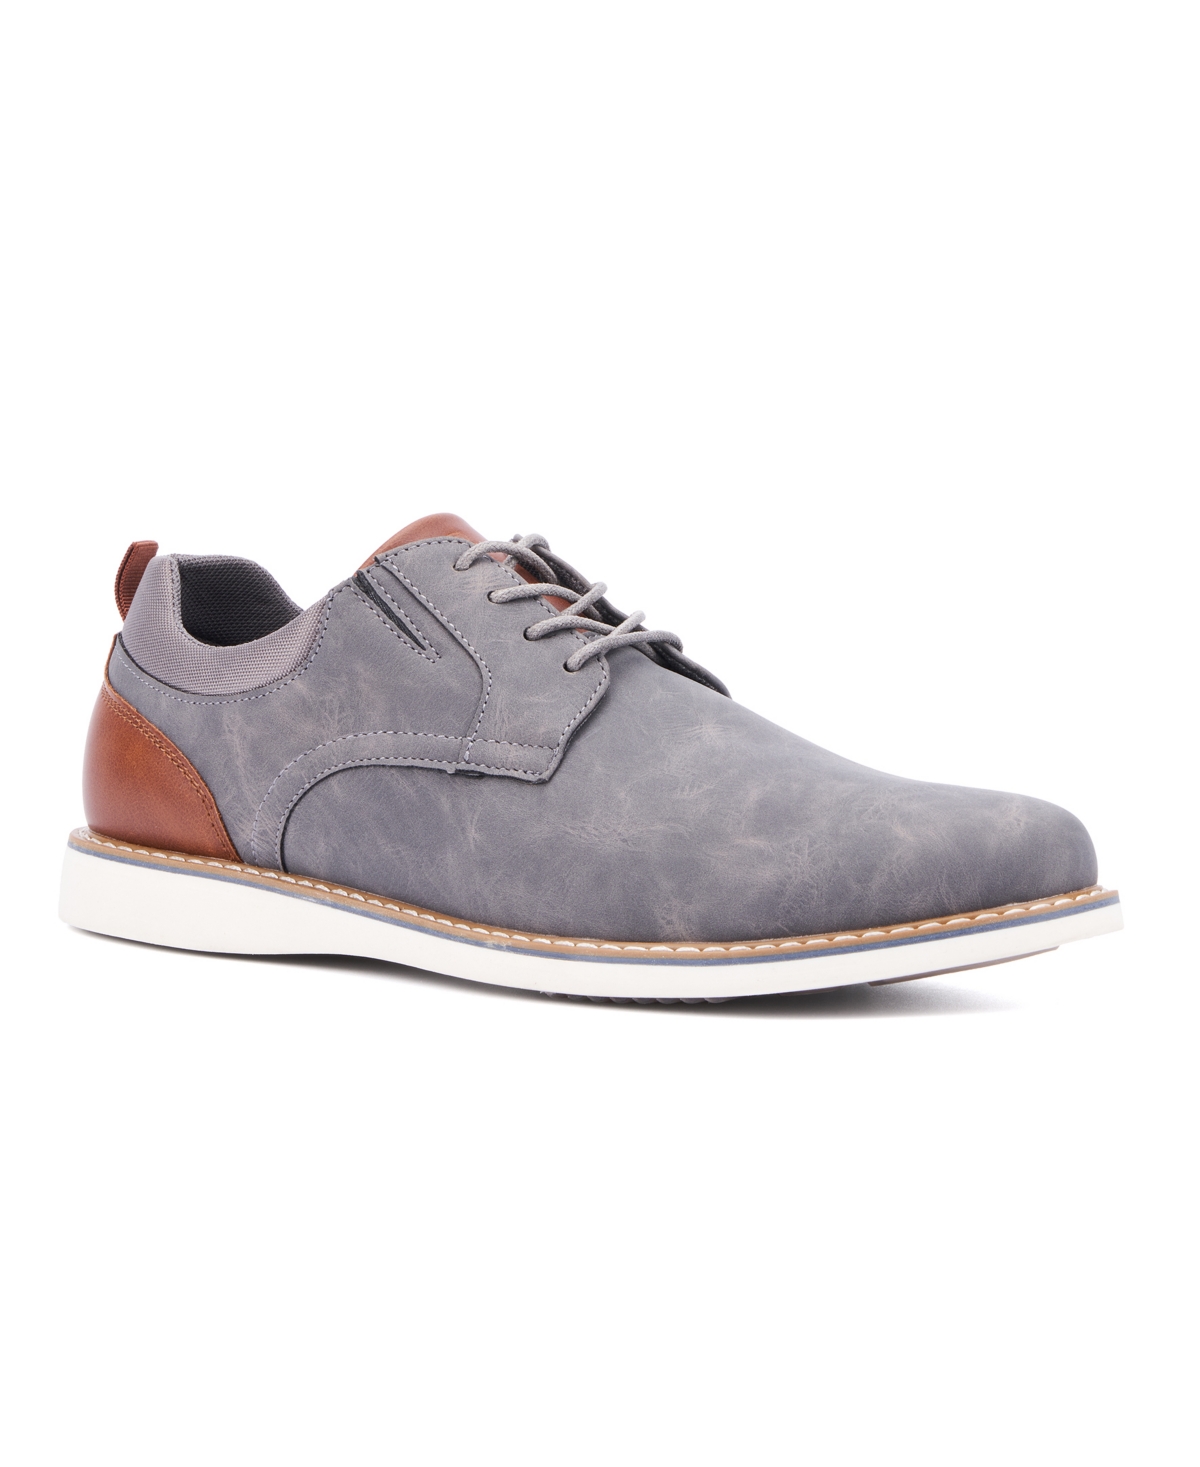 Men's New York Vertigo Oxford Shoes - Gray